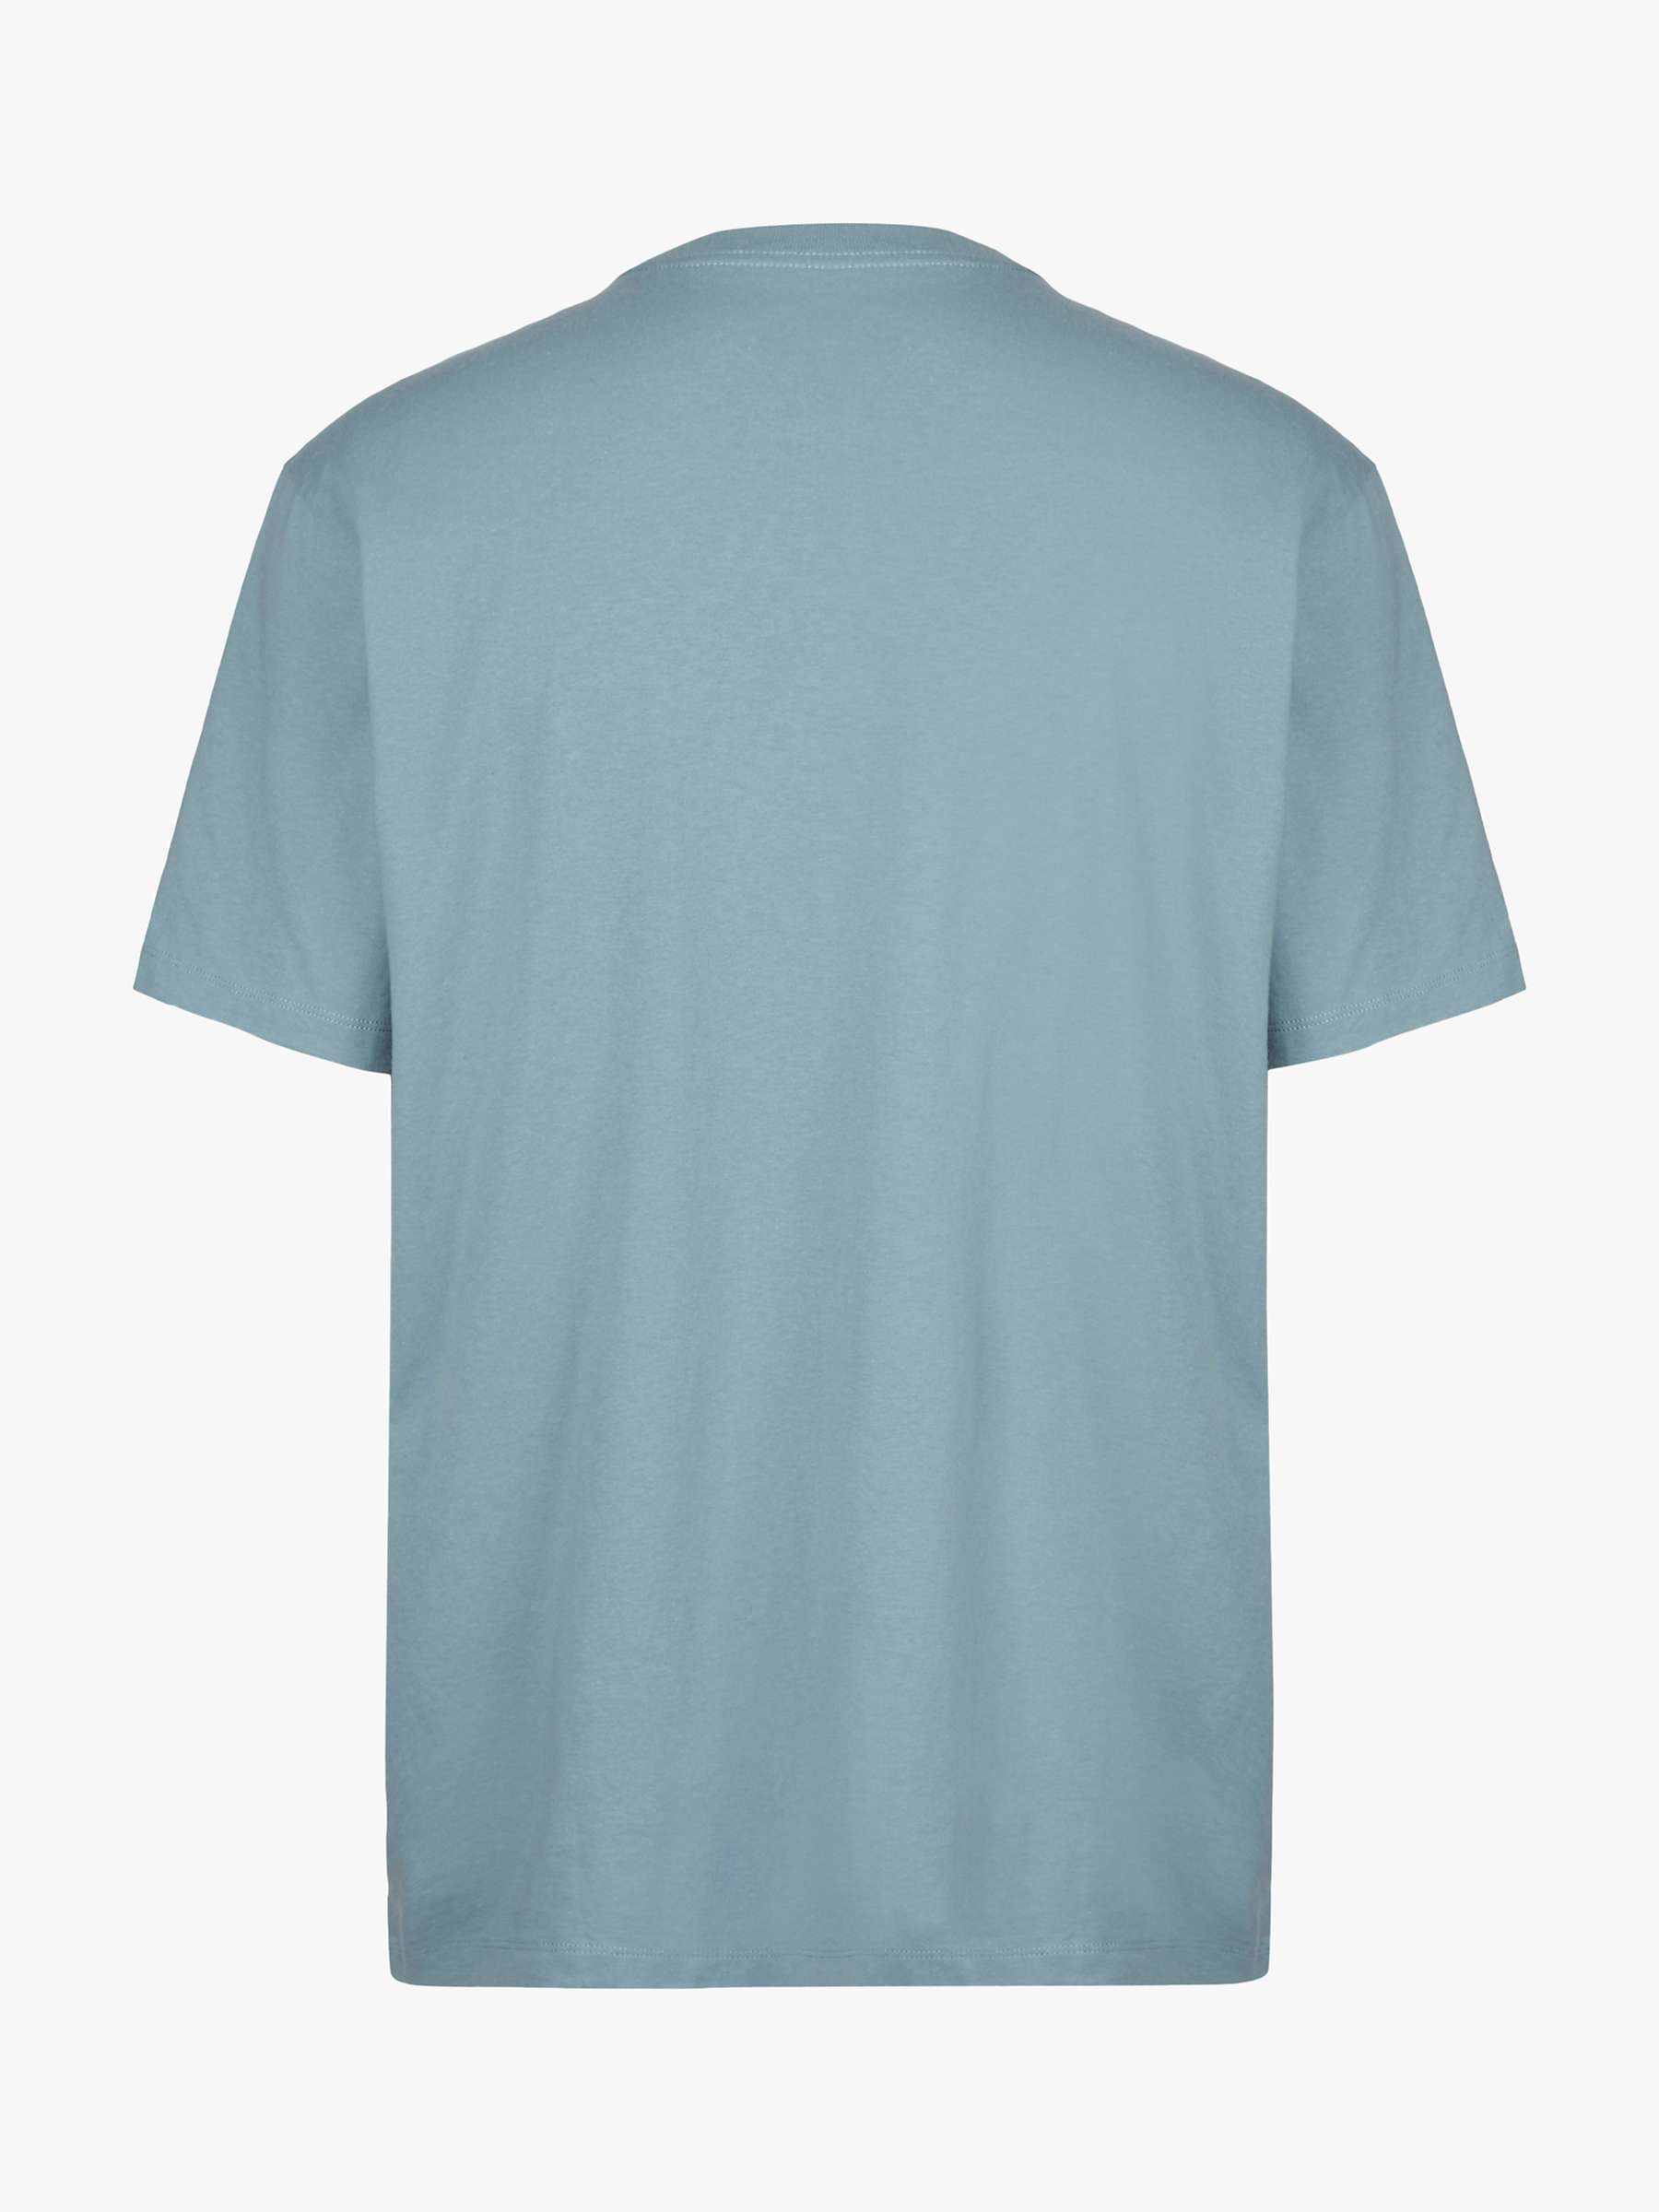 AllSaints Dropout Graphic Logo T-Shirt, Halcyon Blue at John Lewis ...